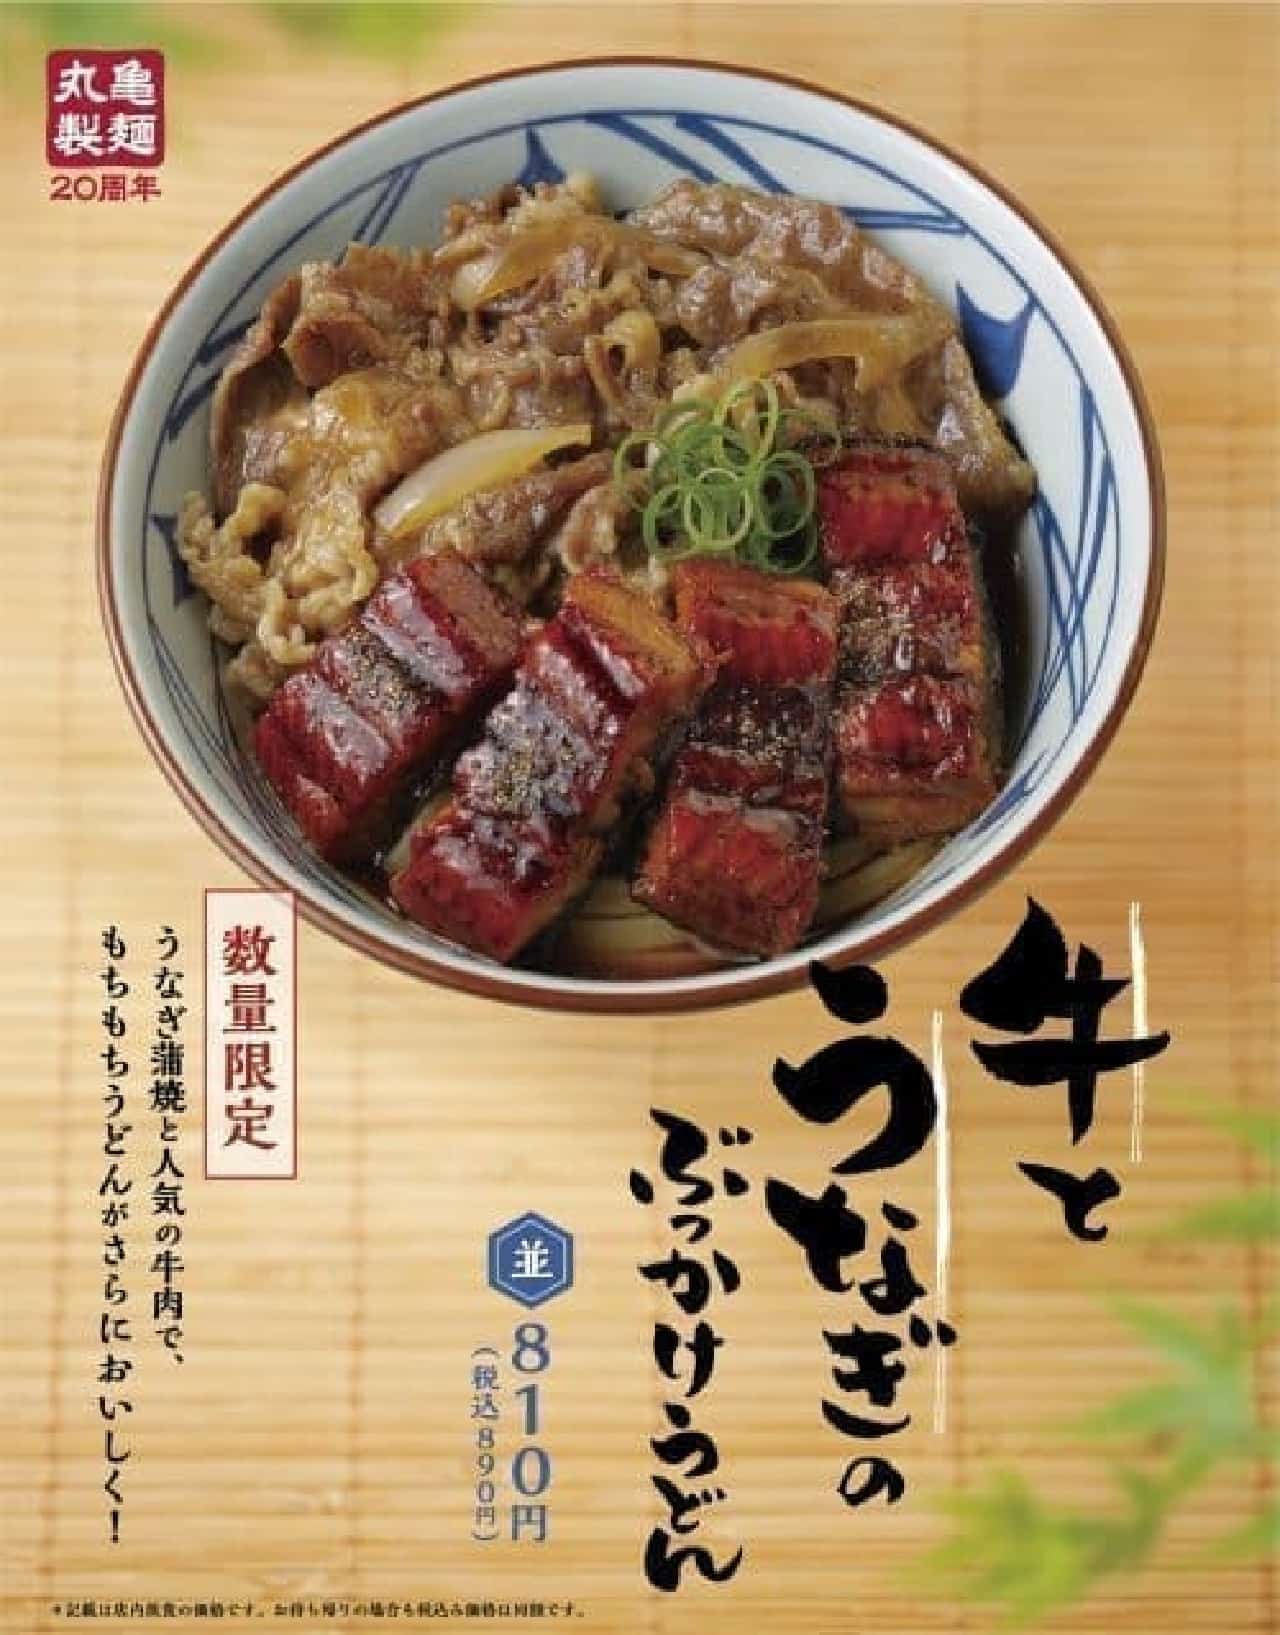 Marugame Seimen "Beef and Eel Bukkake Udon"